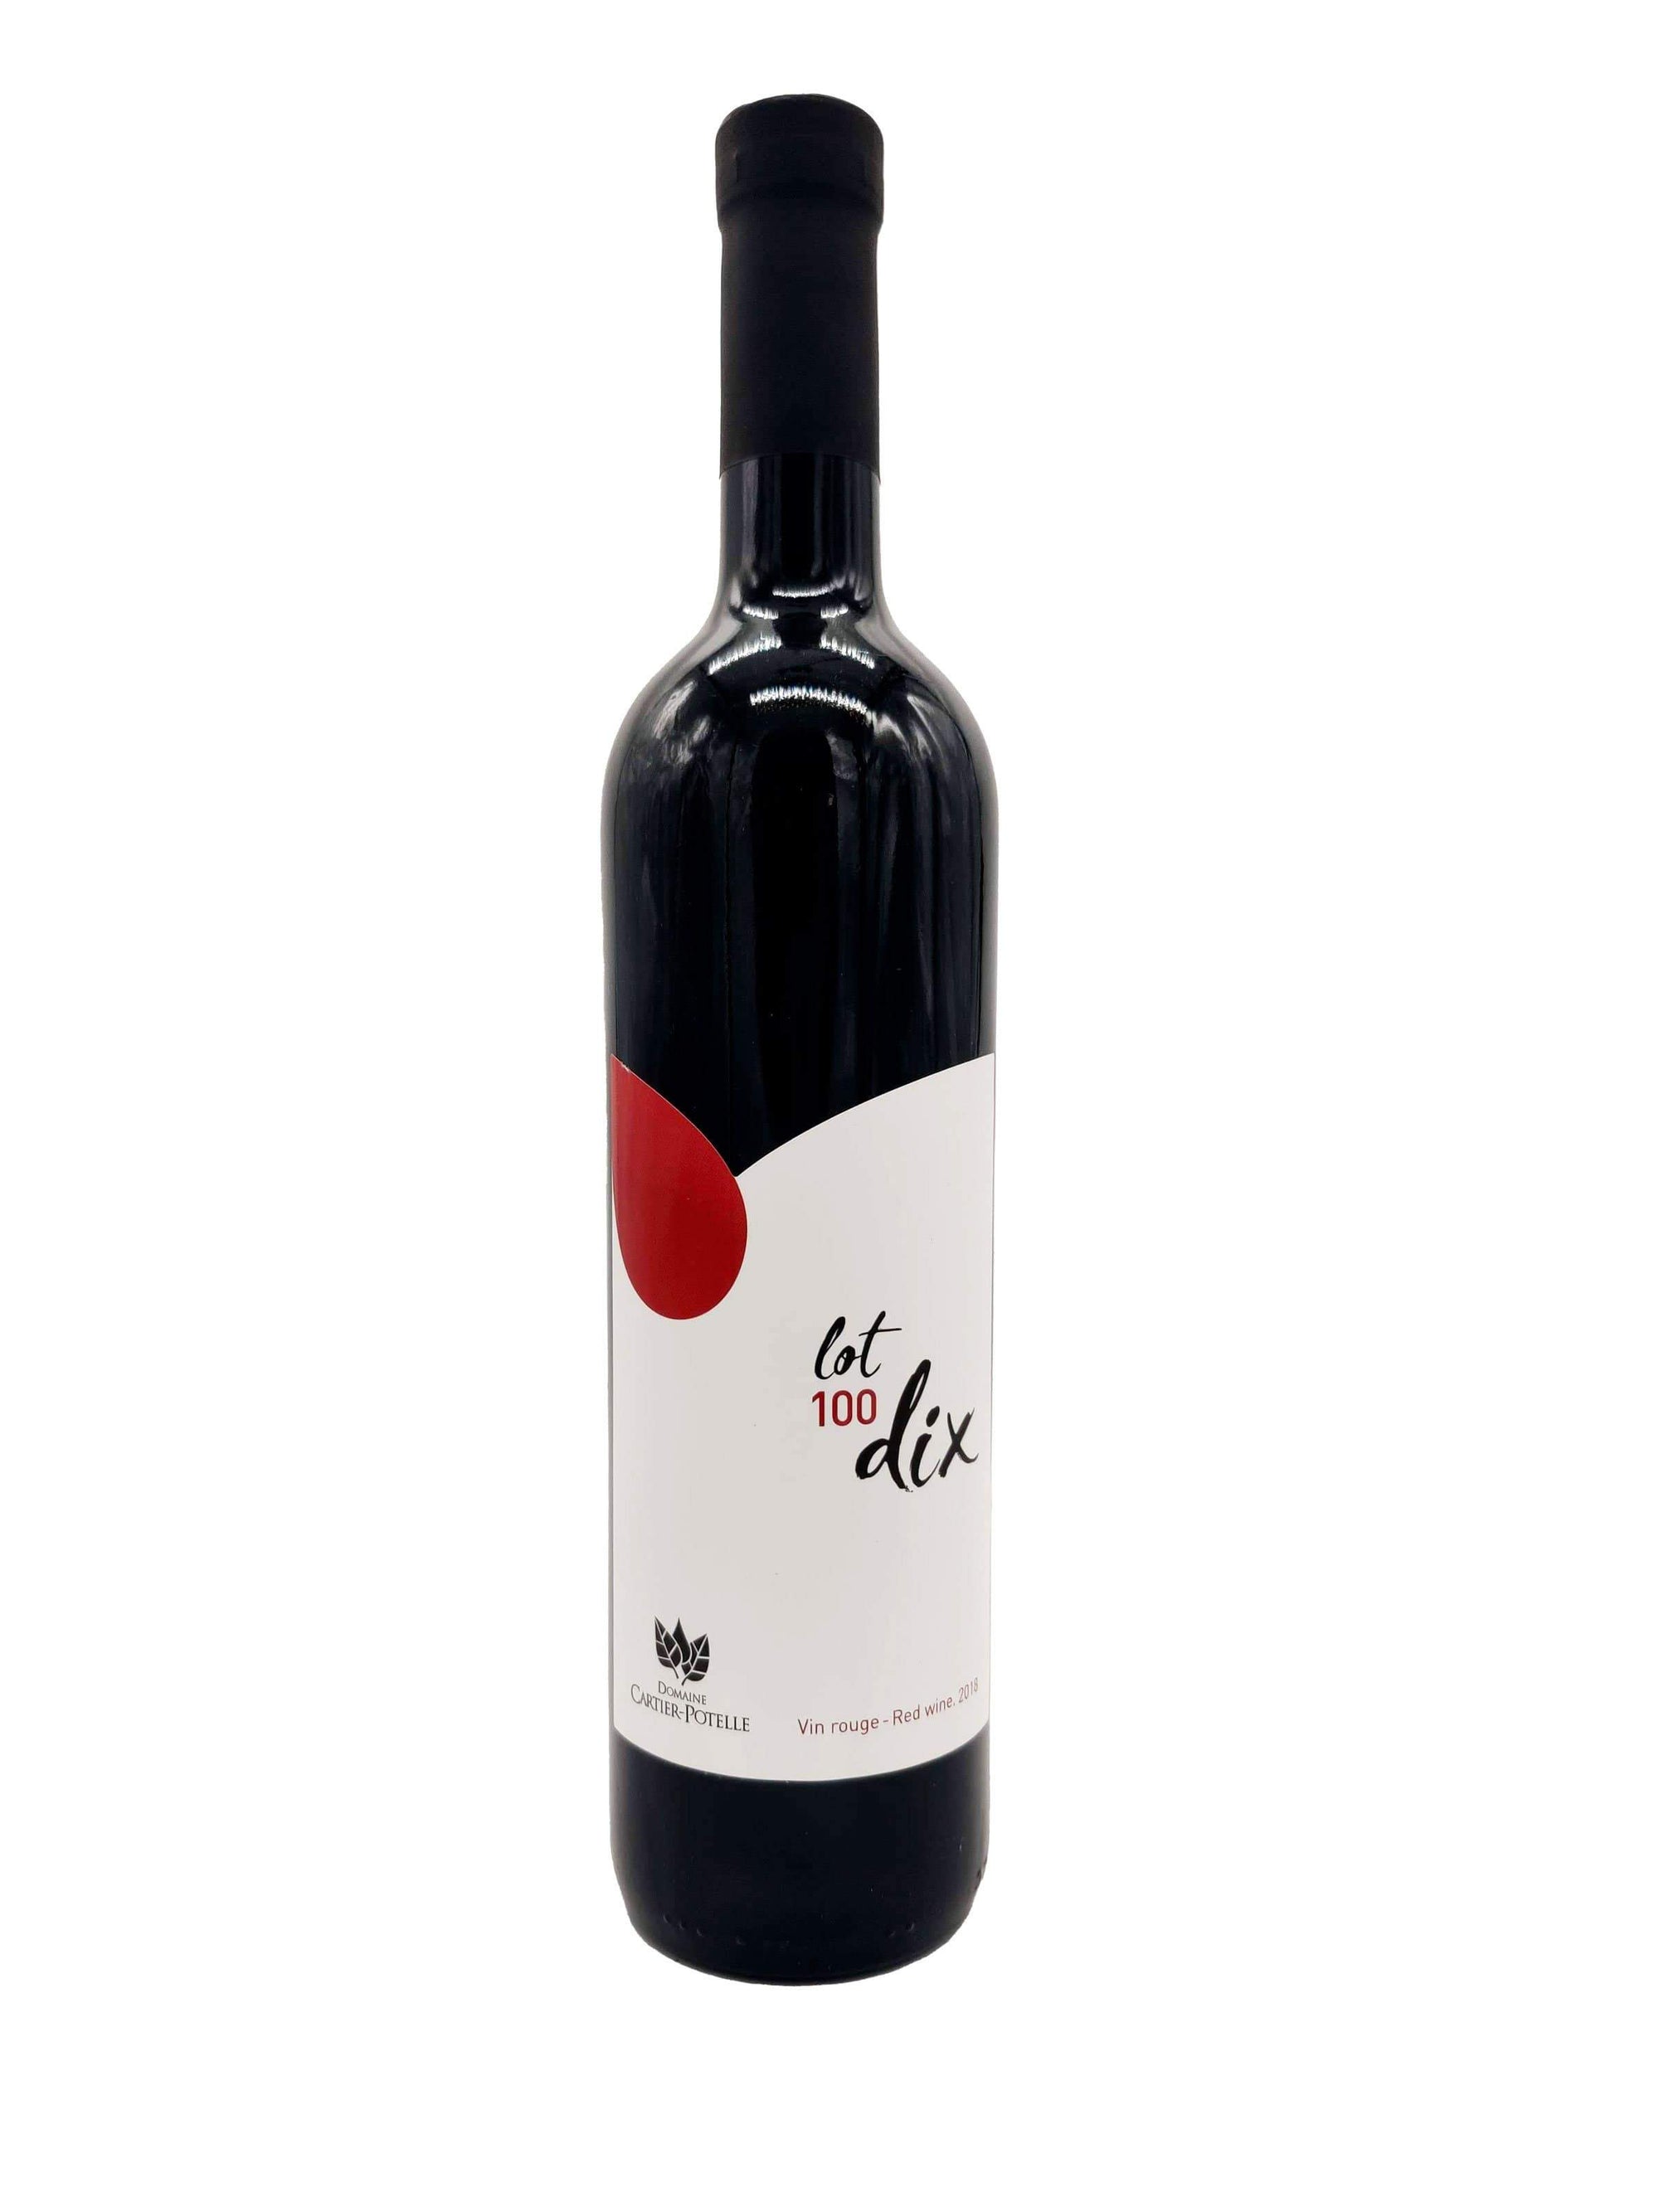 Lot 100 dix rouge 2021- Vin rouge du Domaine Cartier-Potelle